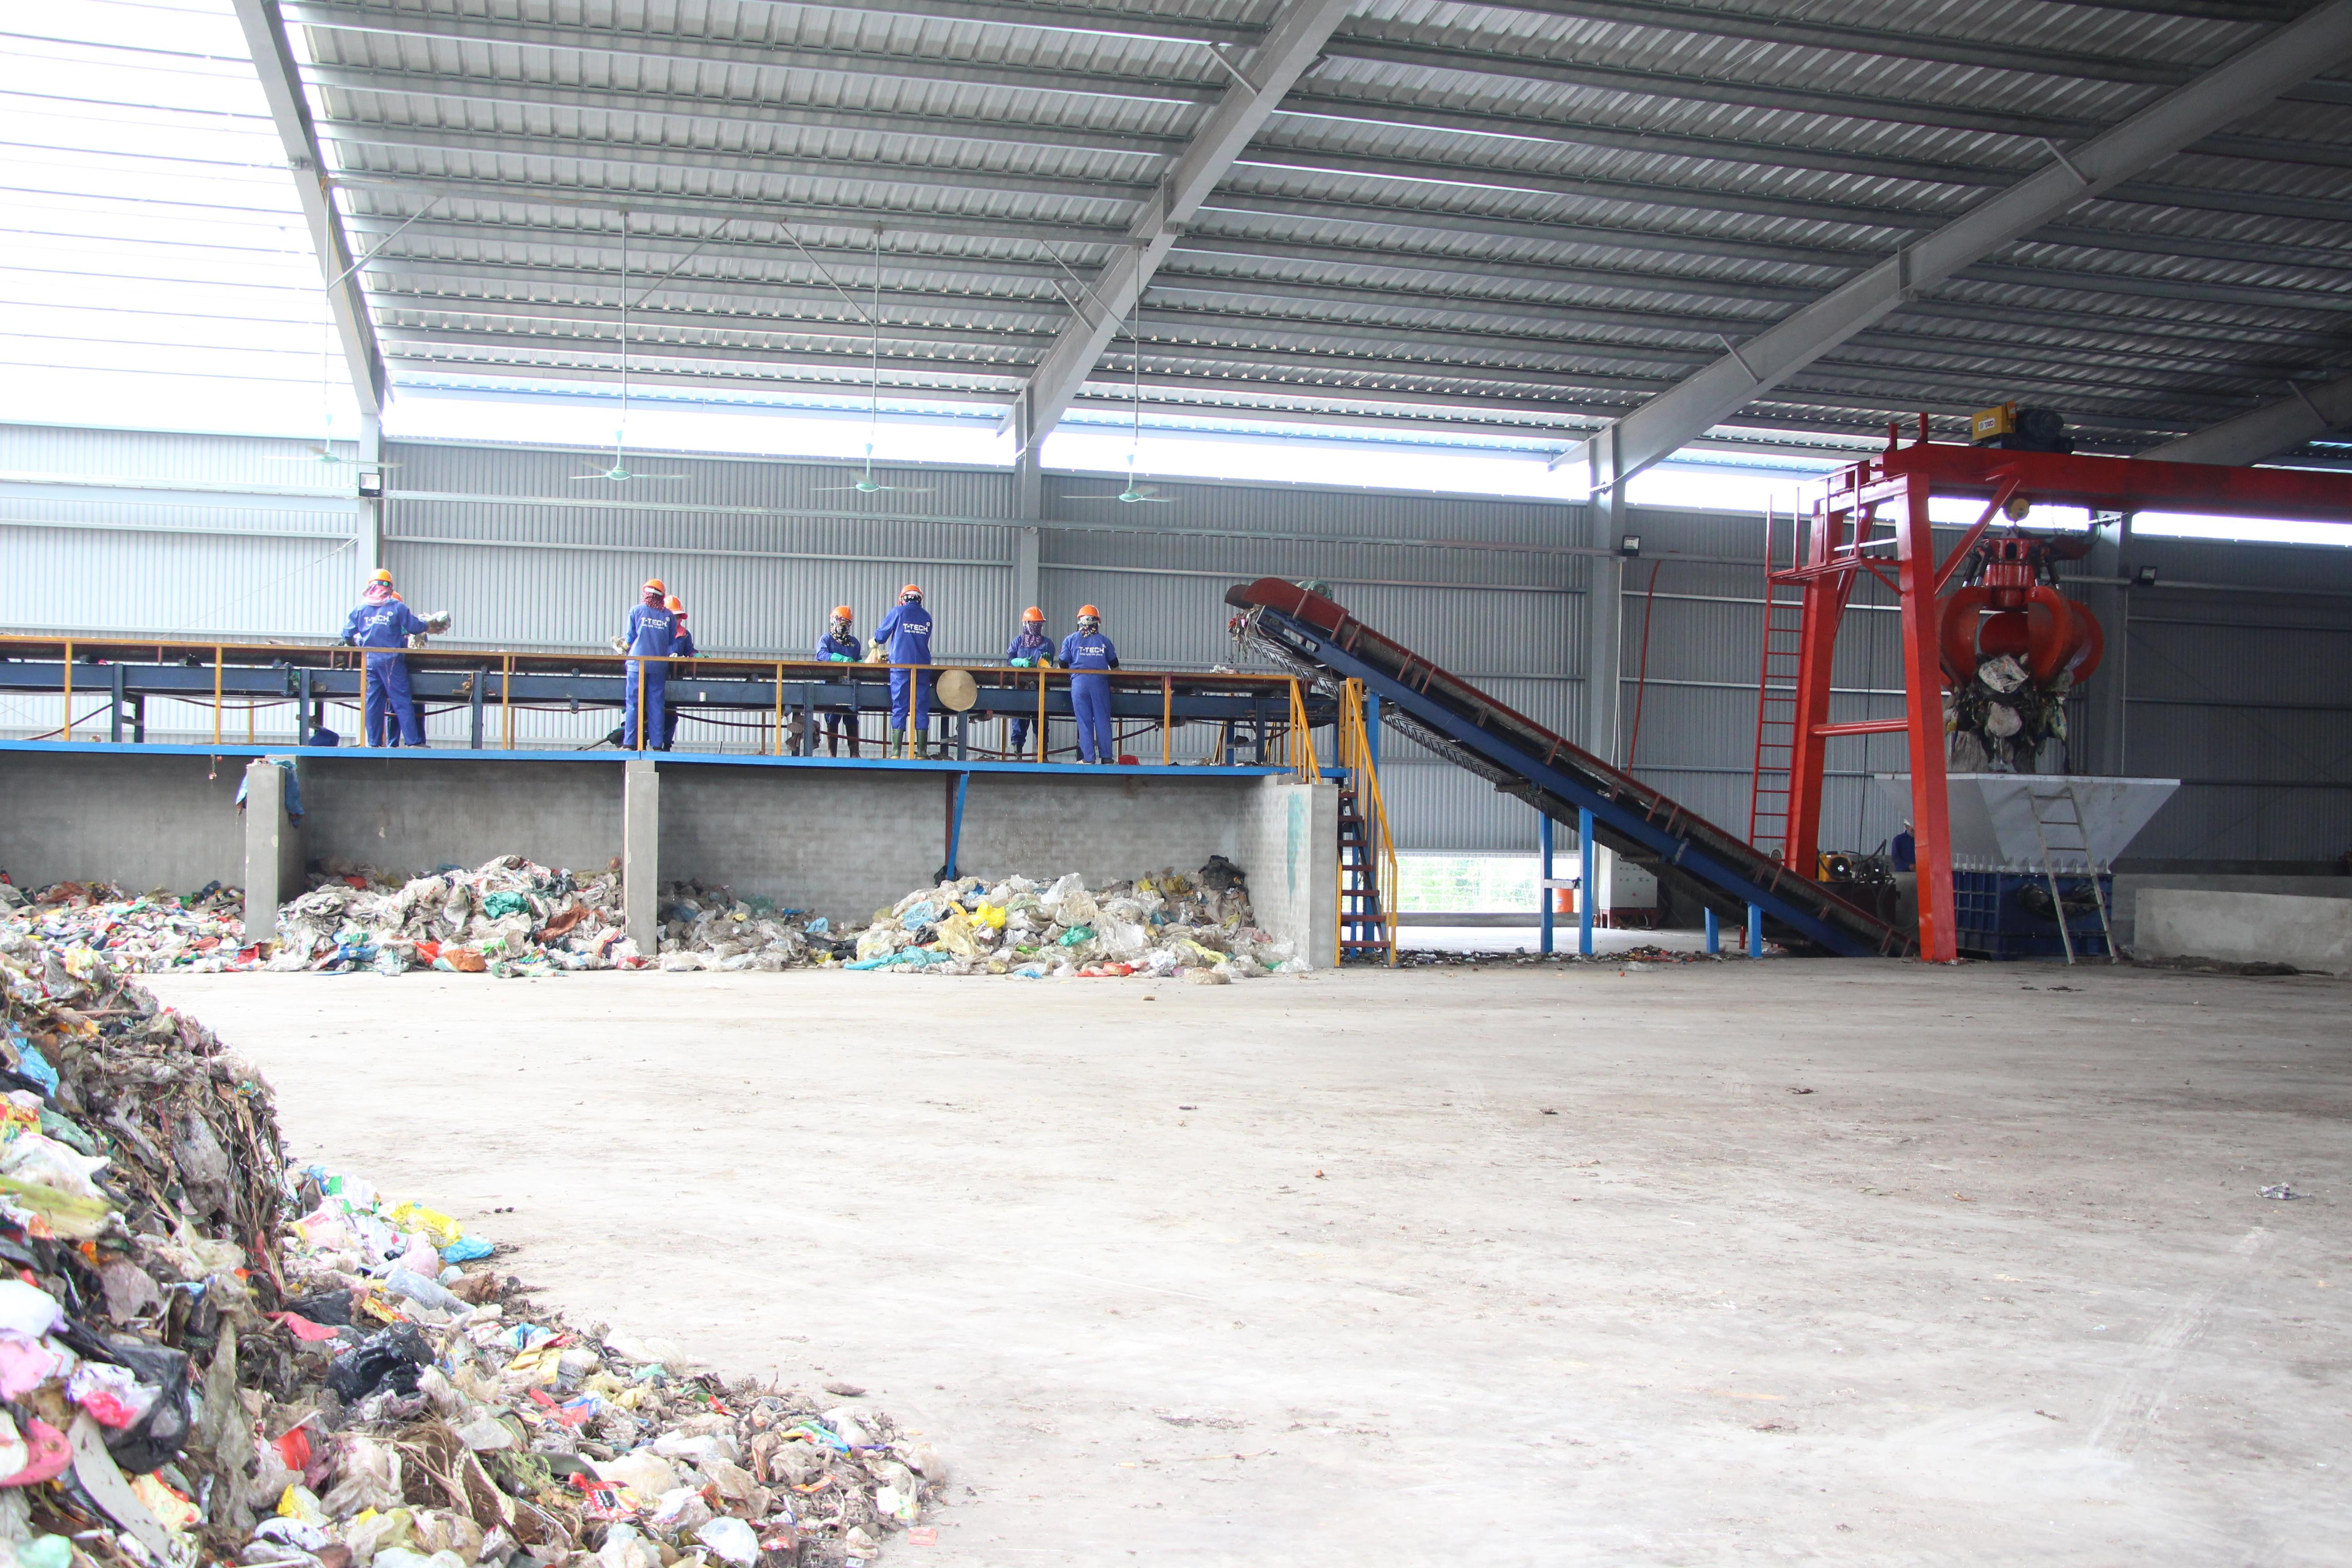 Theo công suất thiết kế, nhà máy có thể xử lý 70 tấn rác/ ngày. Hiện nay xử lý khoảng hơn 30 tấn rác/ngày, đáp ứng xử lý khoảng 70% rác thải toàn thị xã Hoàng Mai